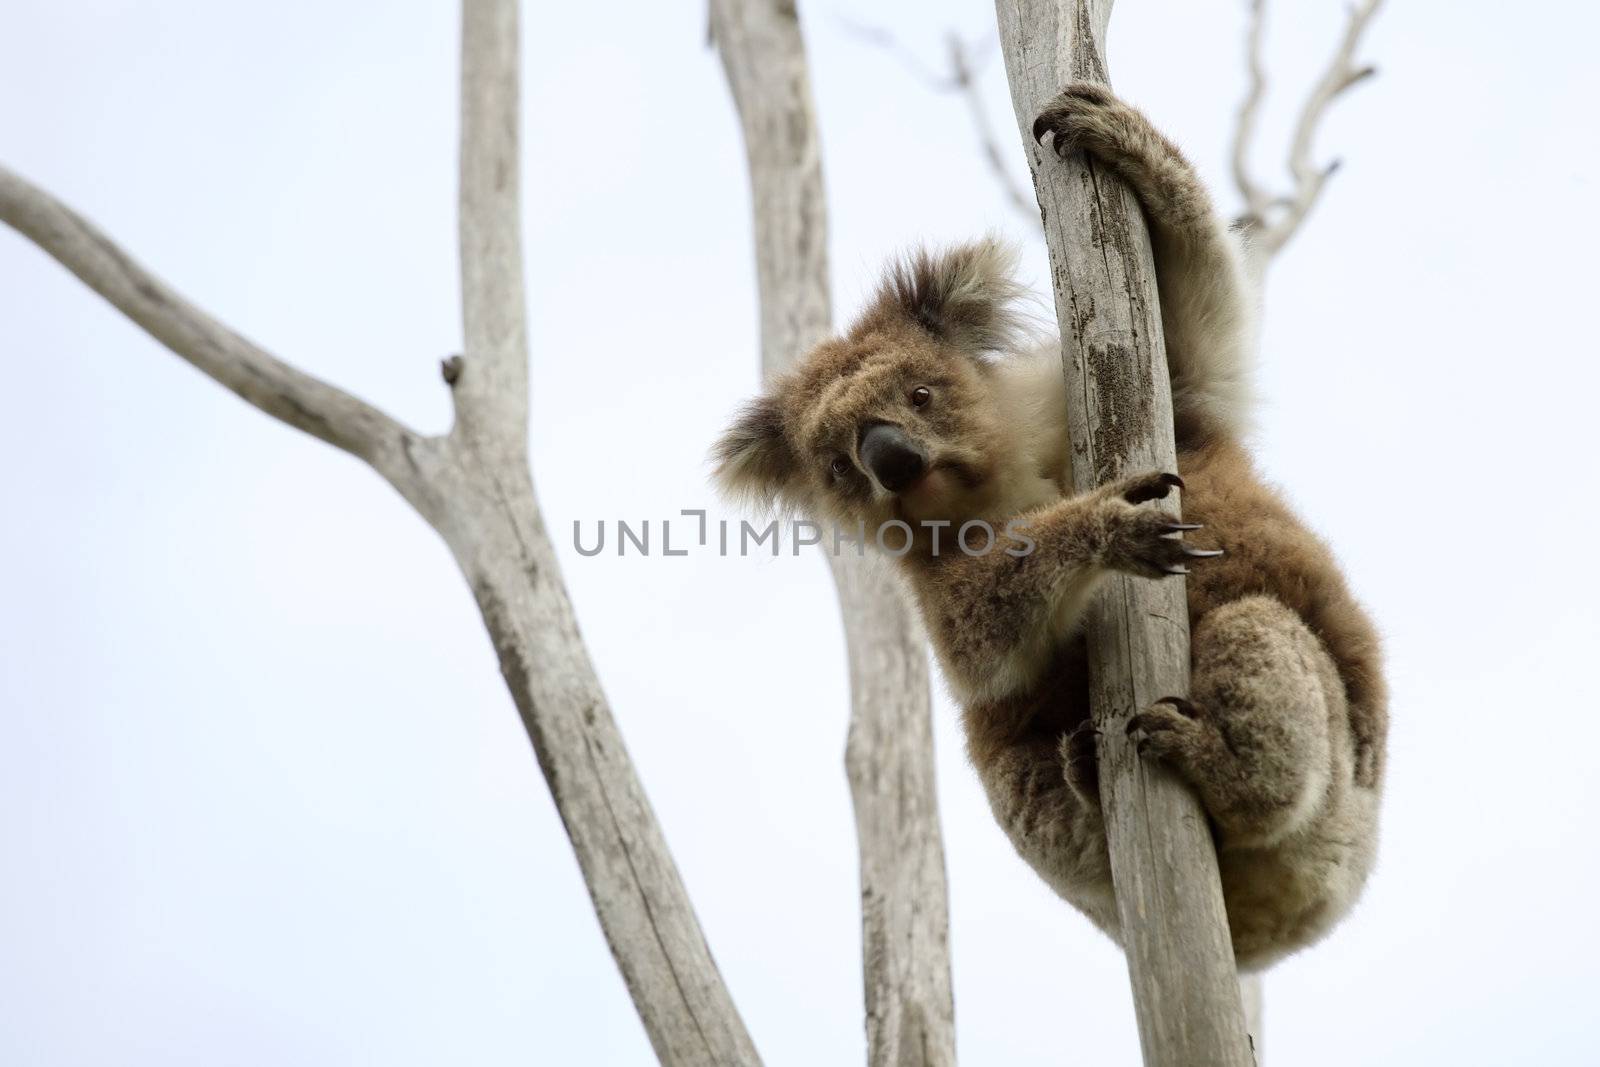 Wild Koala up a tree (not a zoo image)
